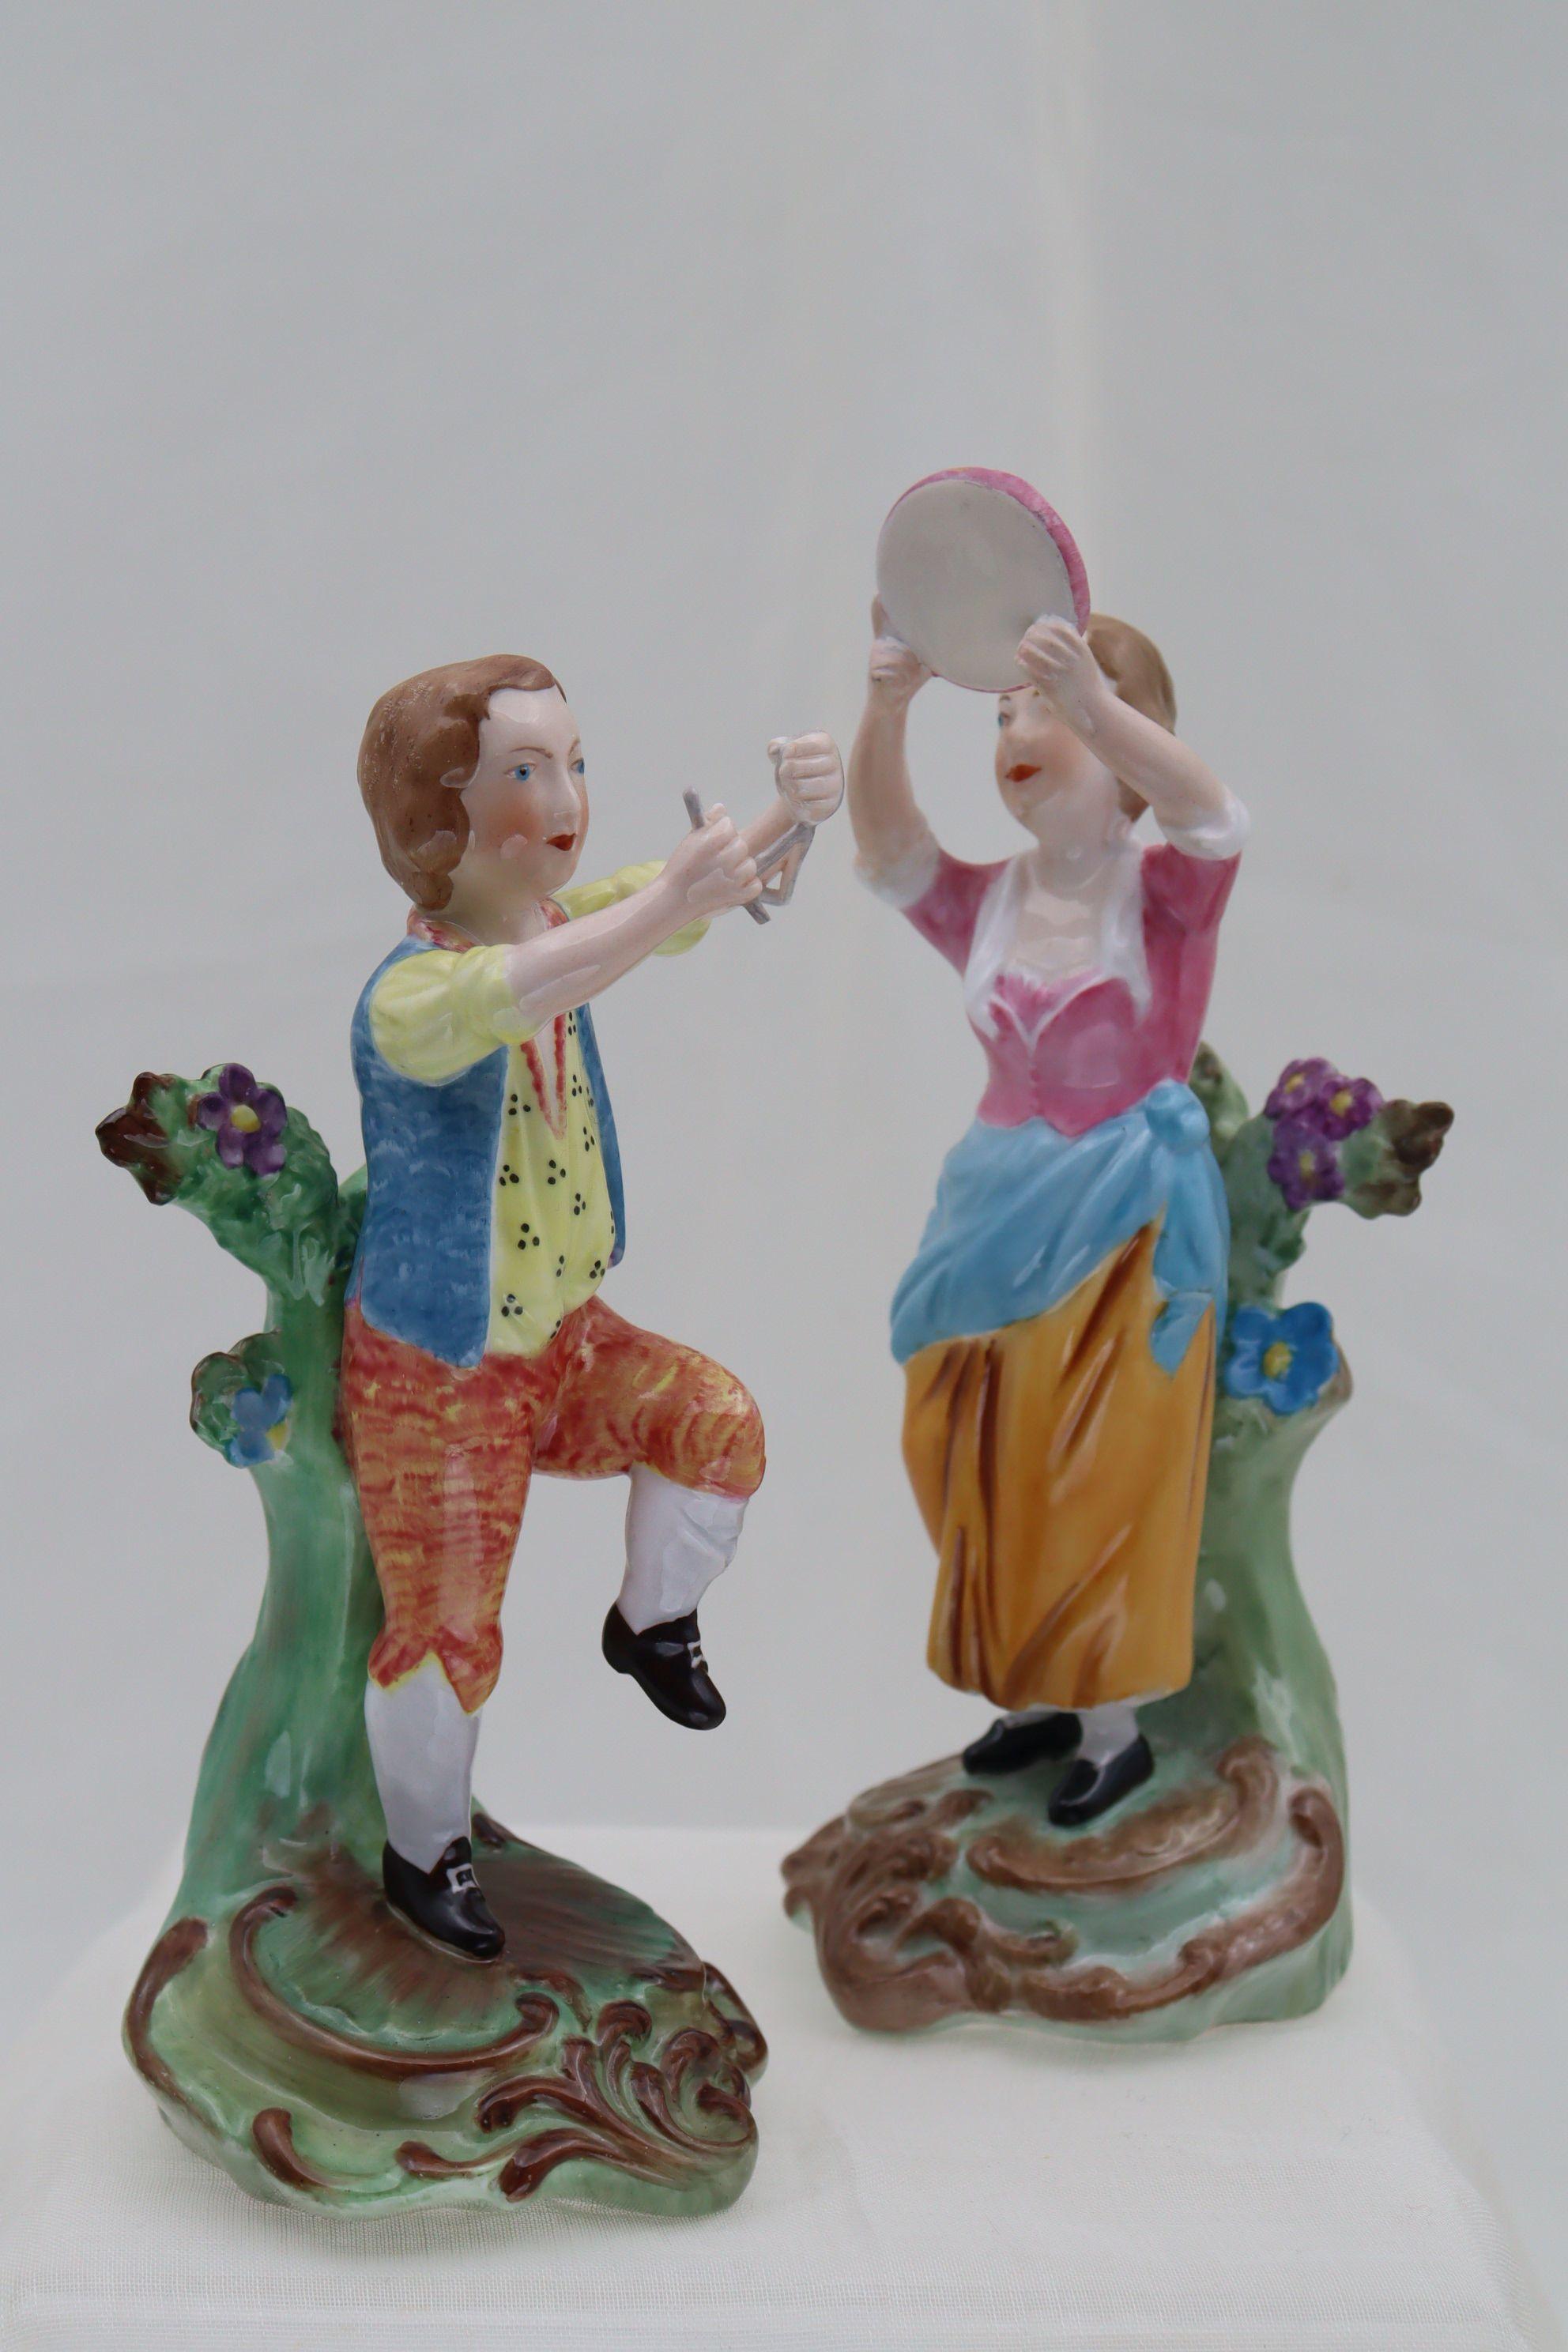 Ces deux figurines en porcelaine font partie d'une série éditée par Copeland Spode en 1933, pour célébrer le bicentenaire de la naissance de Josiah Spode. Pour créer cette série, Spode a utilisé les moules originaux de l'usine de Chelsea datant de